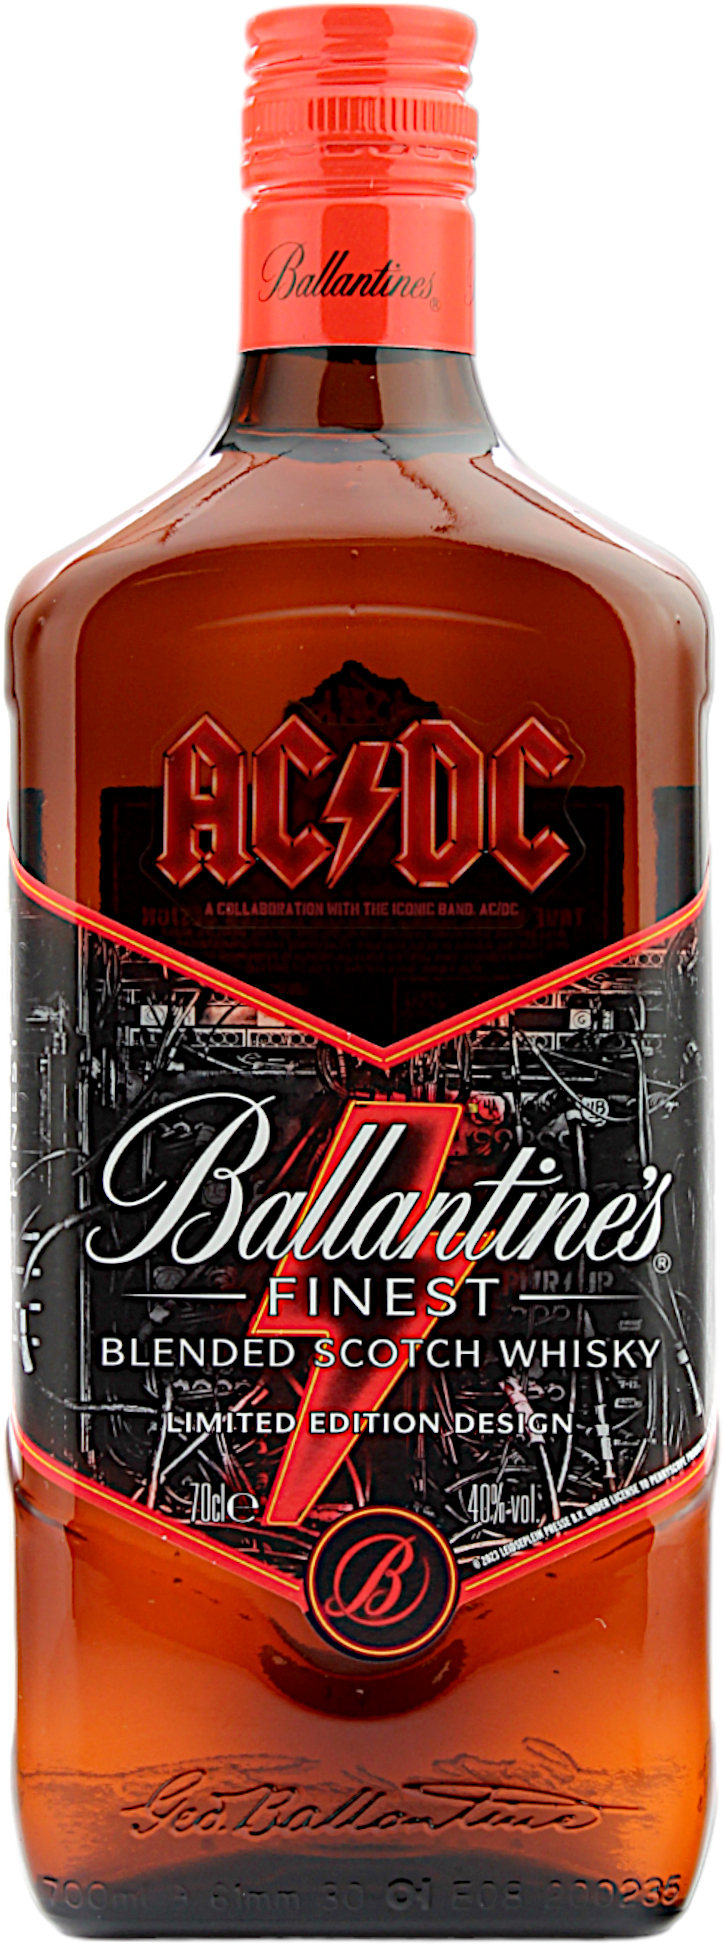 Ballantine's Finest AC/DC Blended Scotch Whisky 40.0% 0.7l